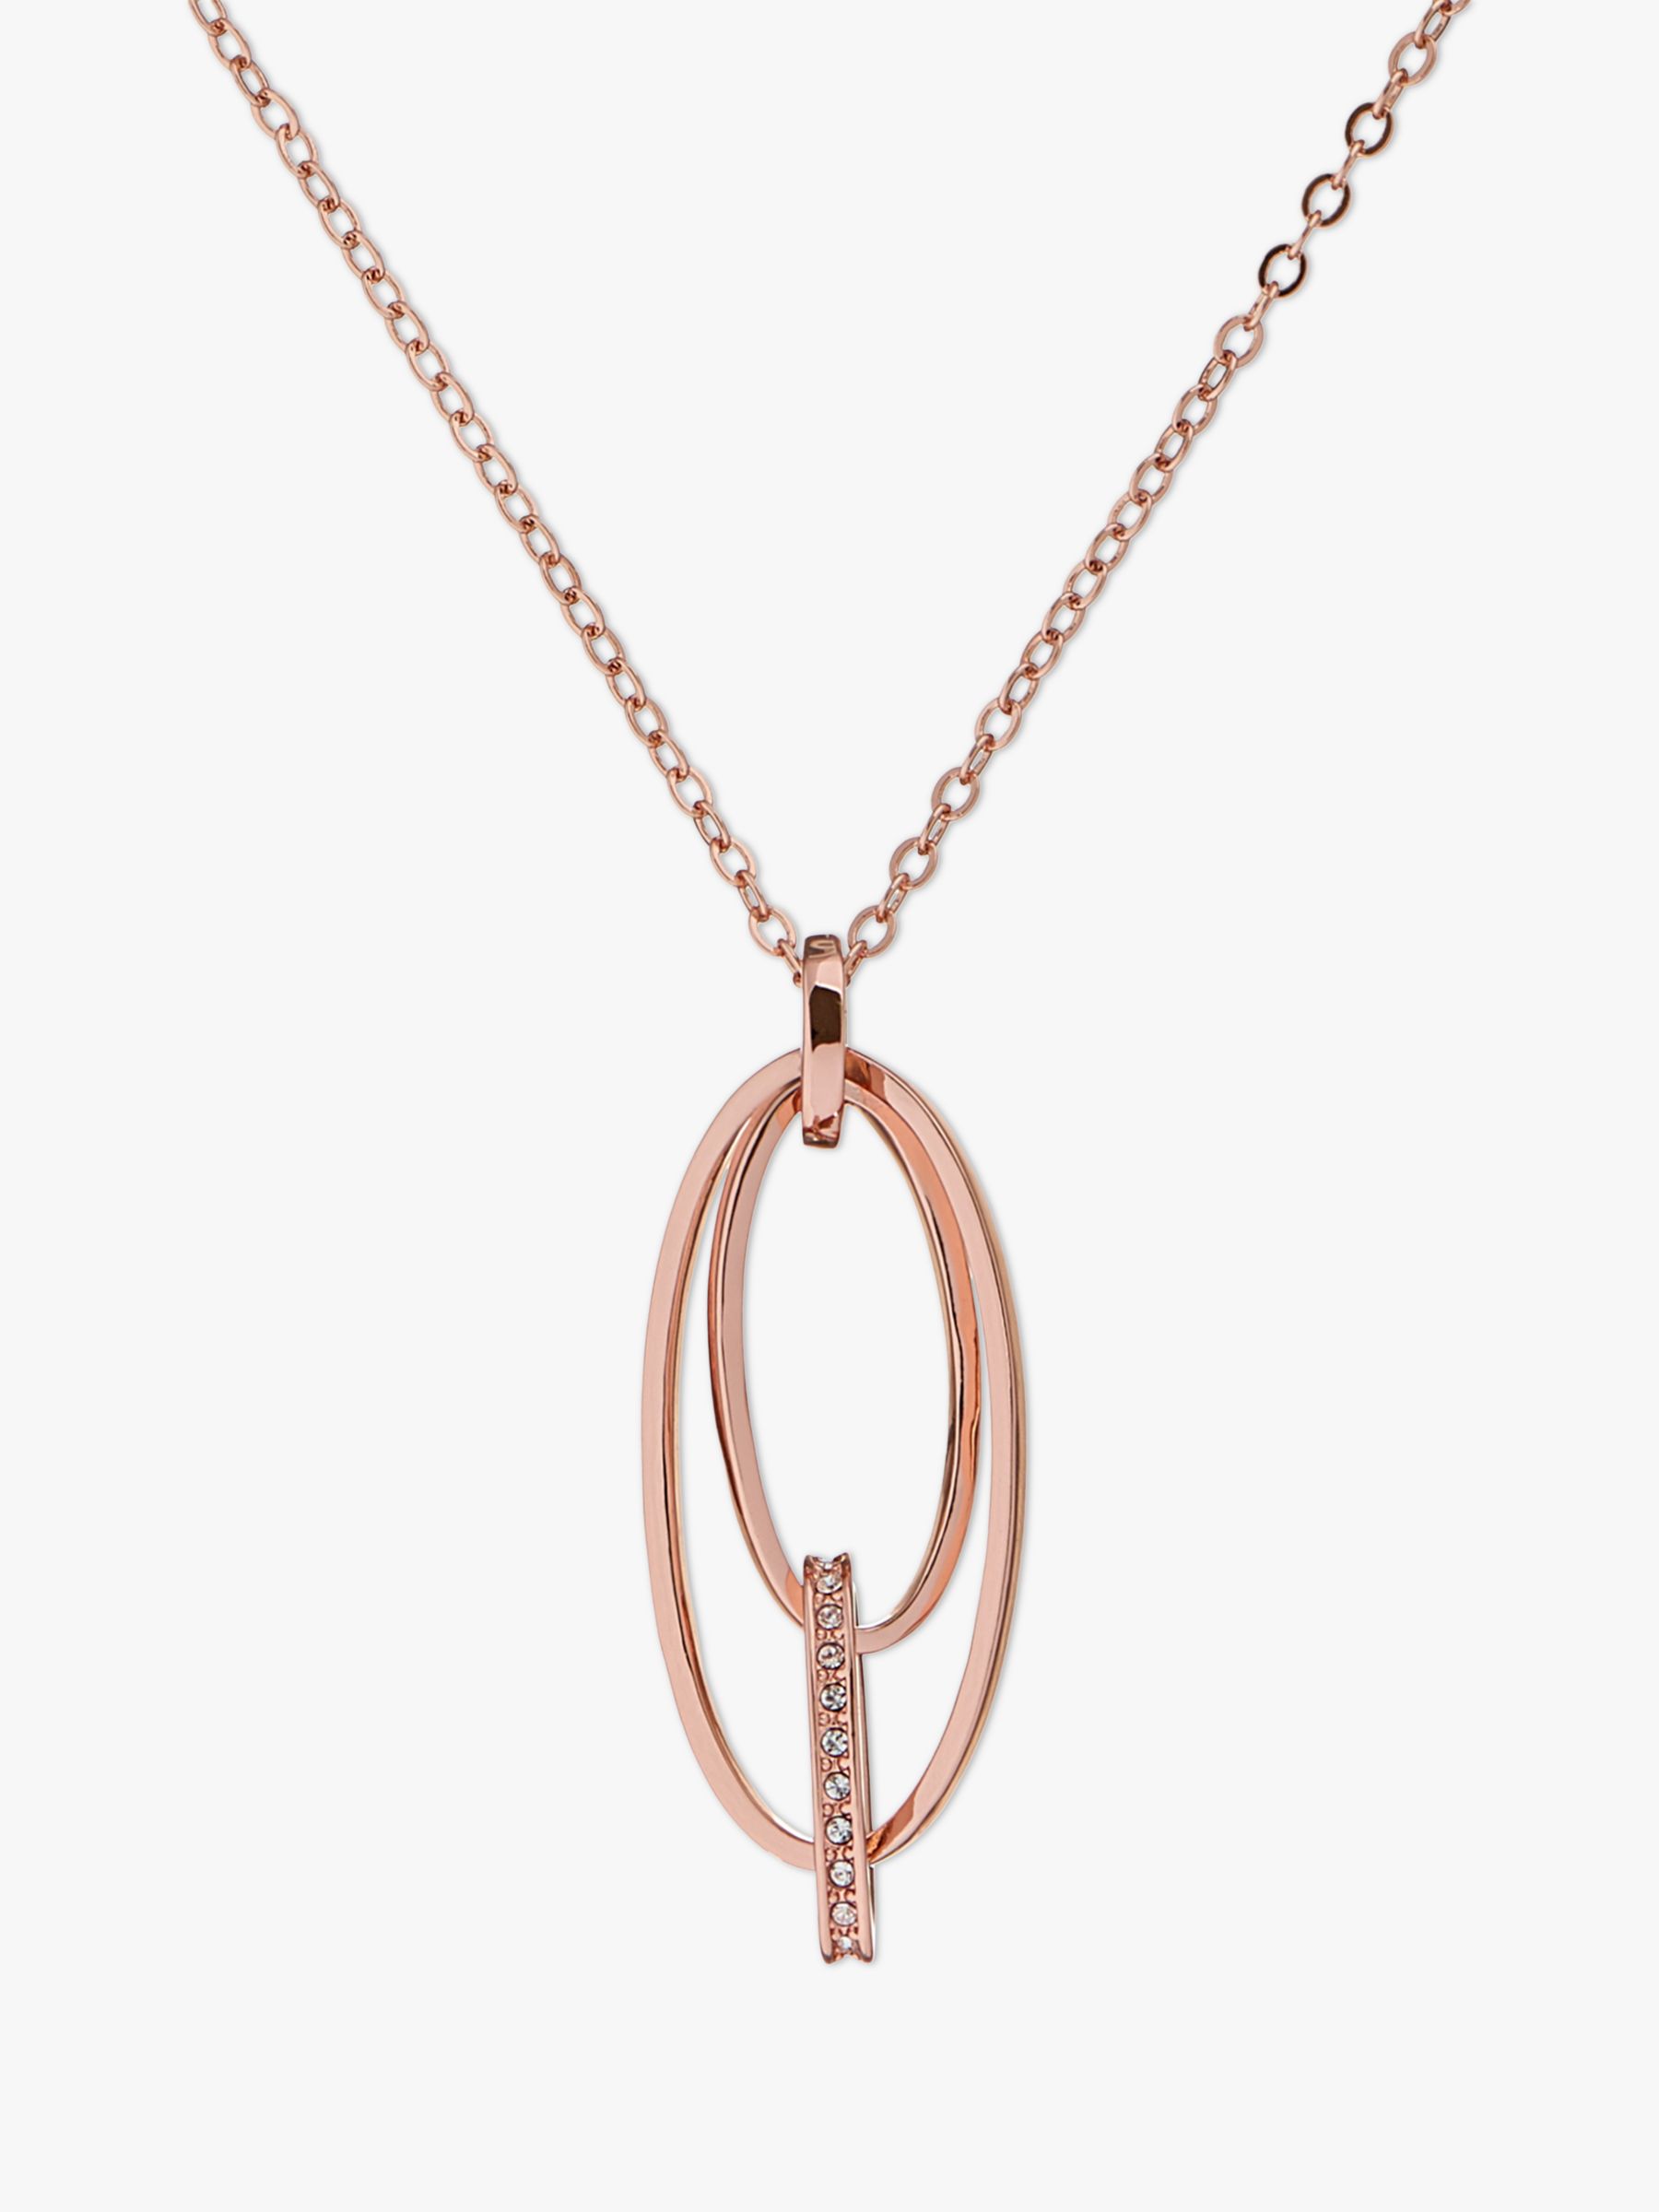 Karen Millen Swarovski Crystal Pave Oval Pendant Necklace